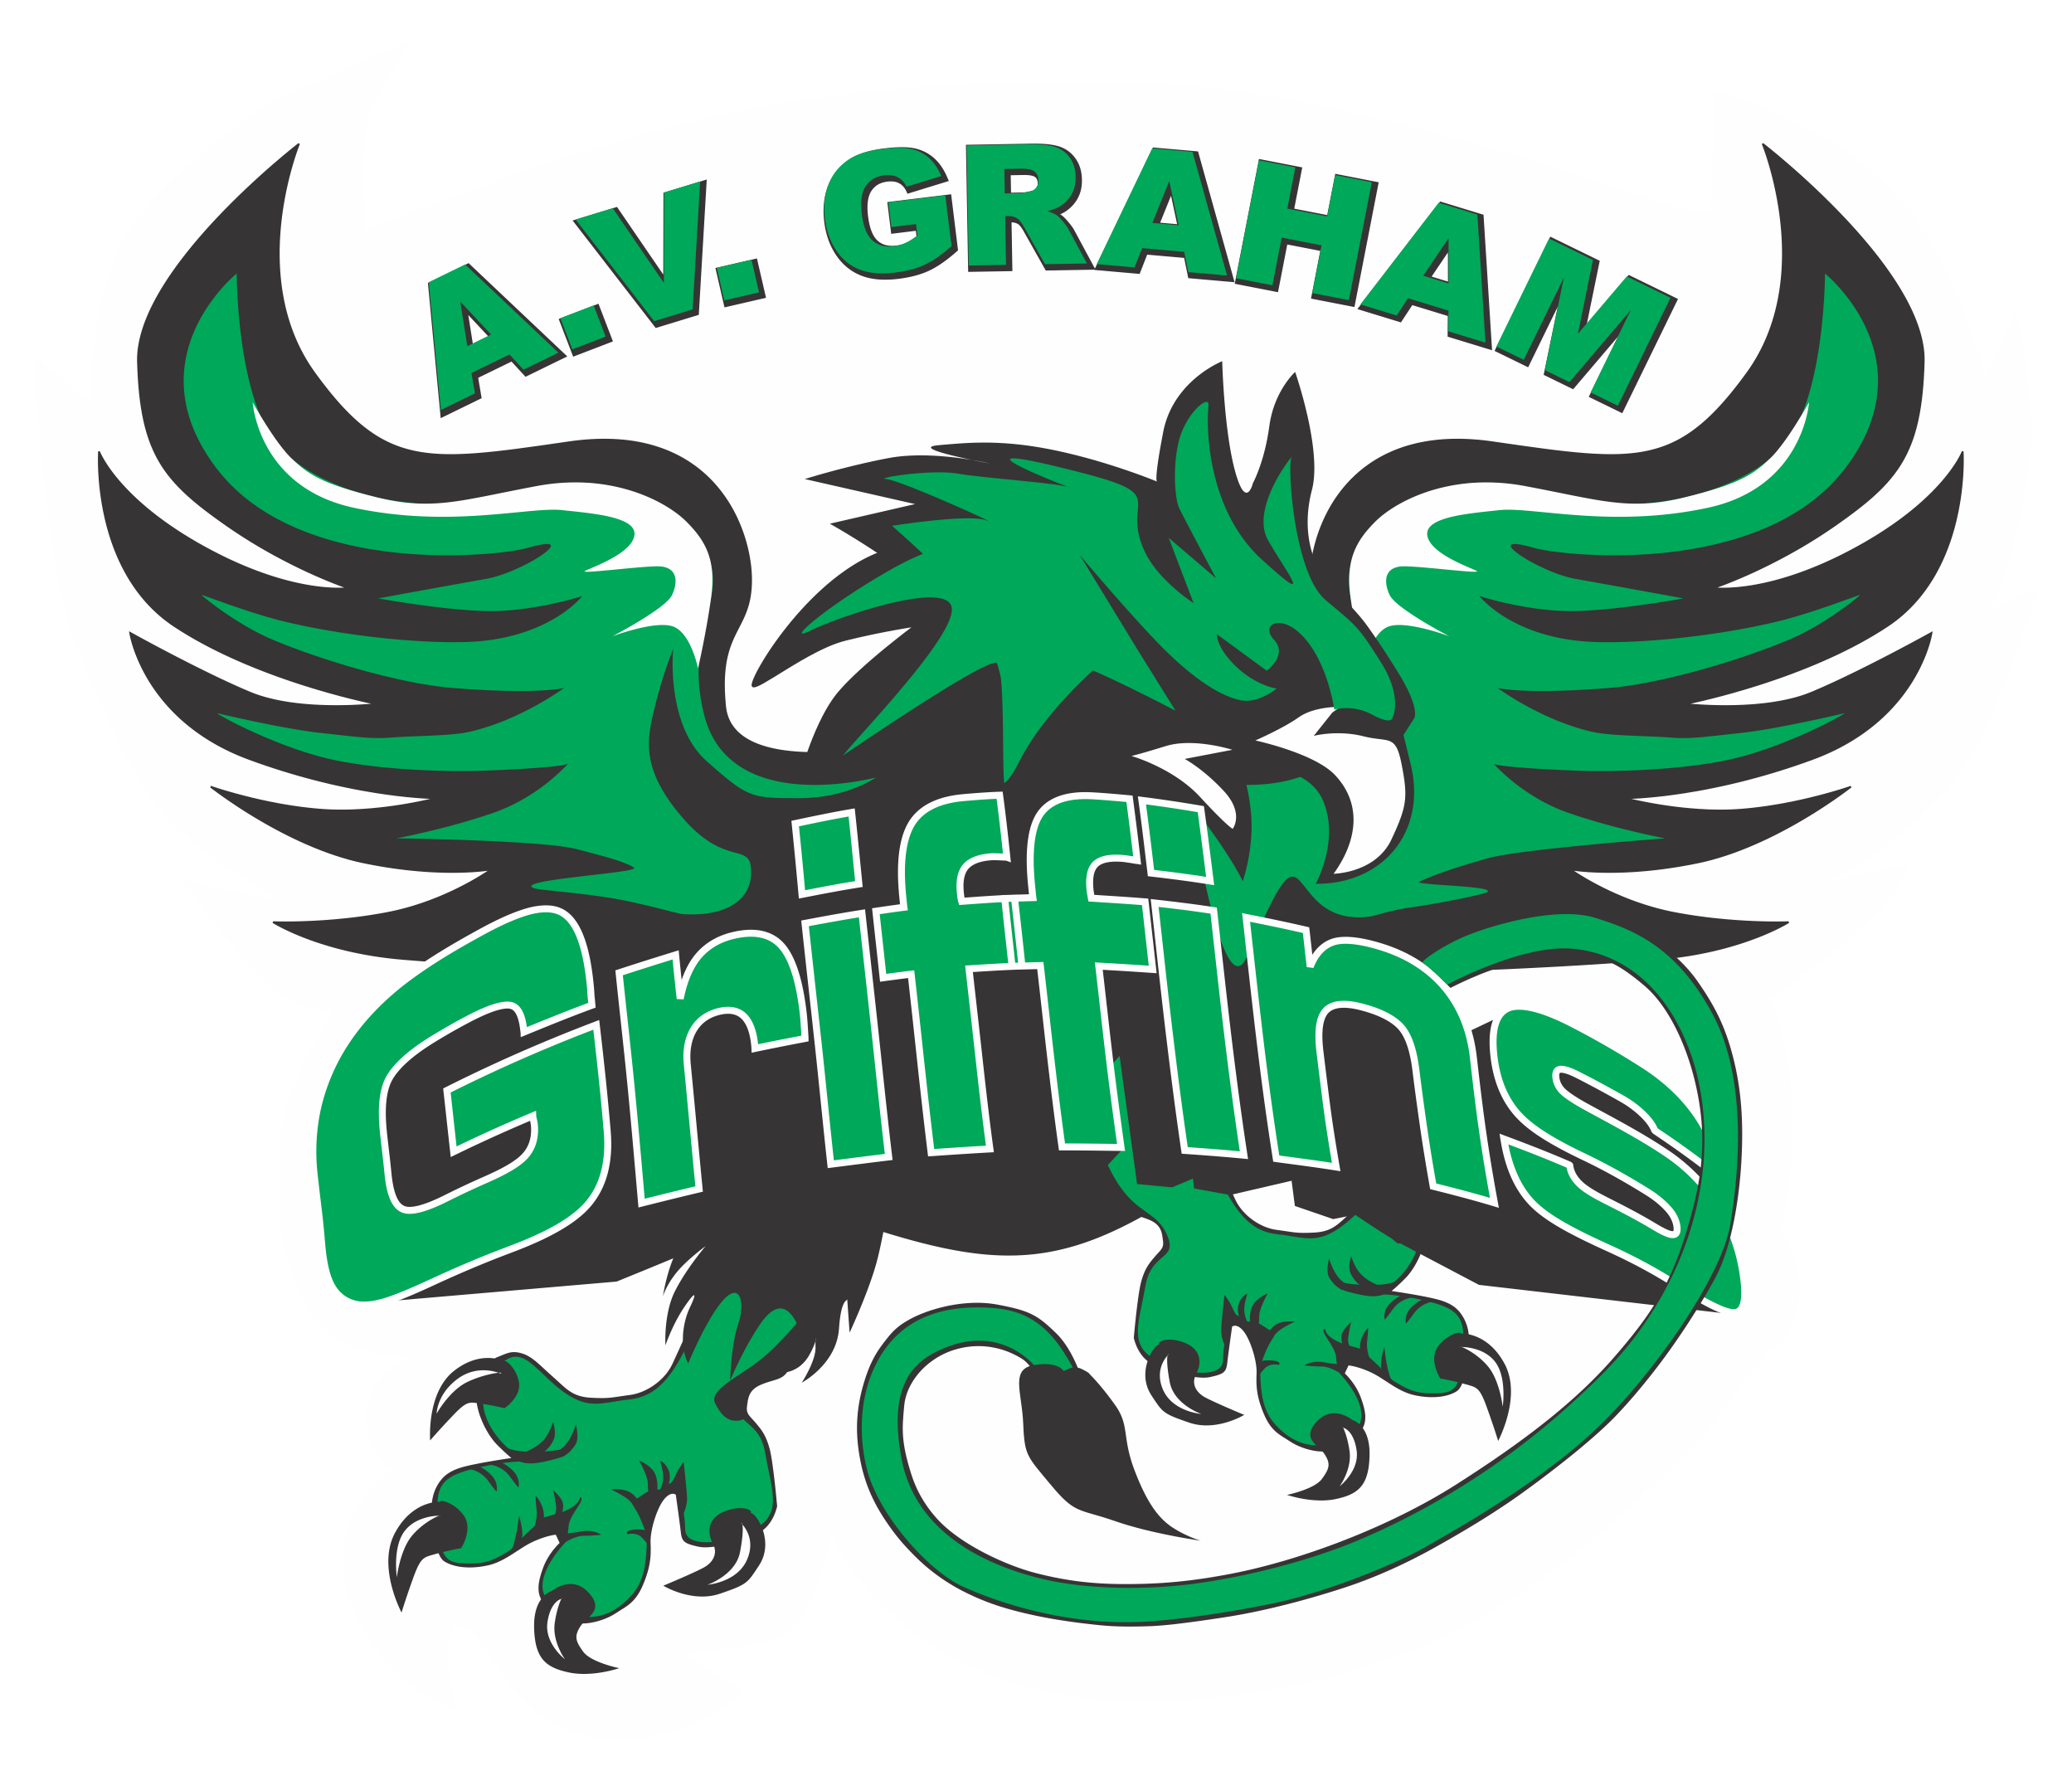 A.V. Graham Public School Logo